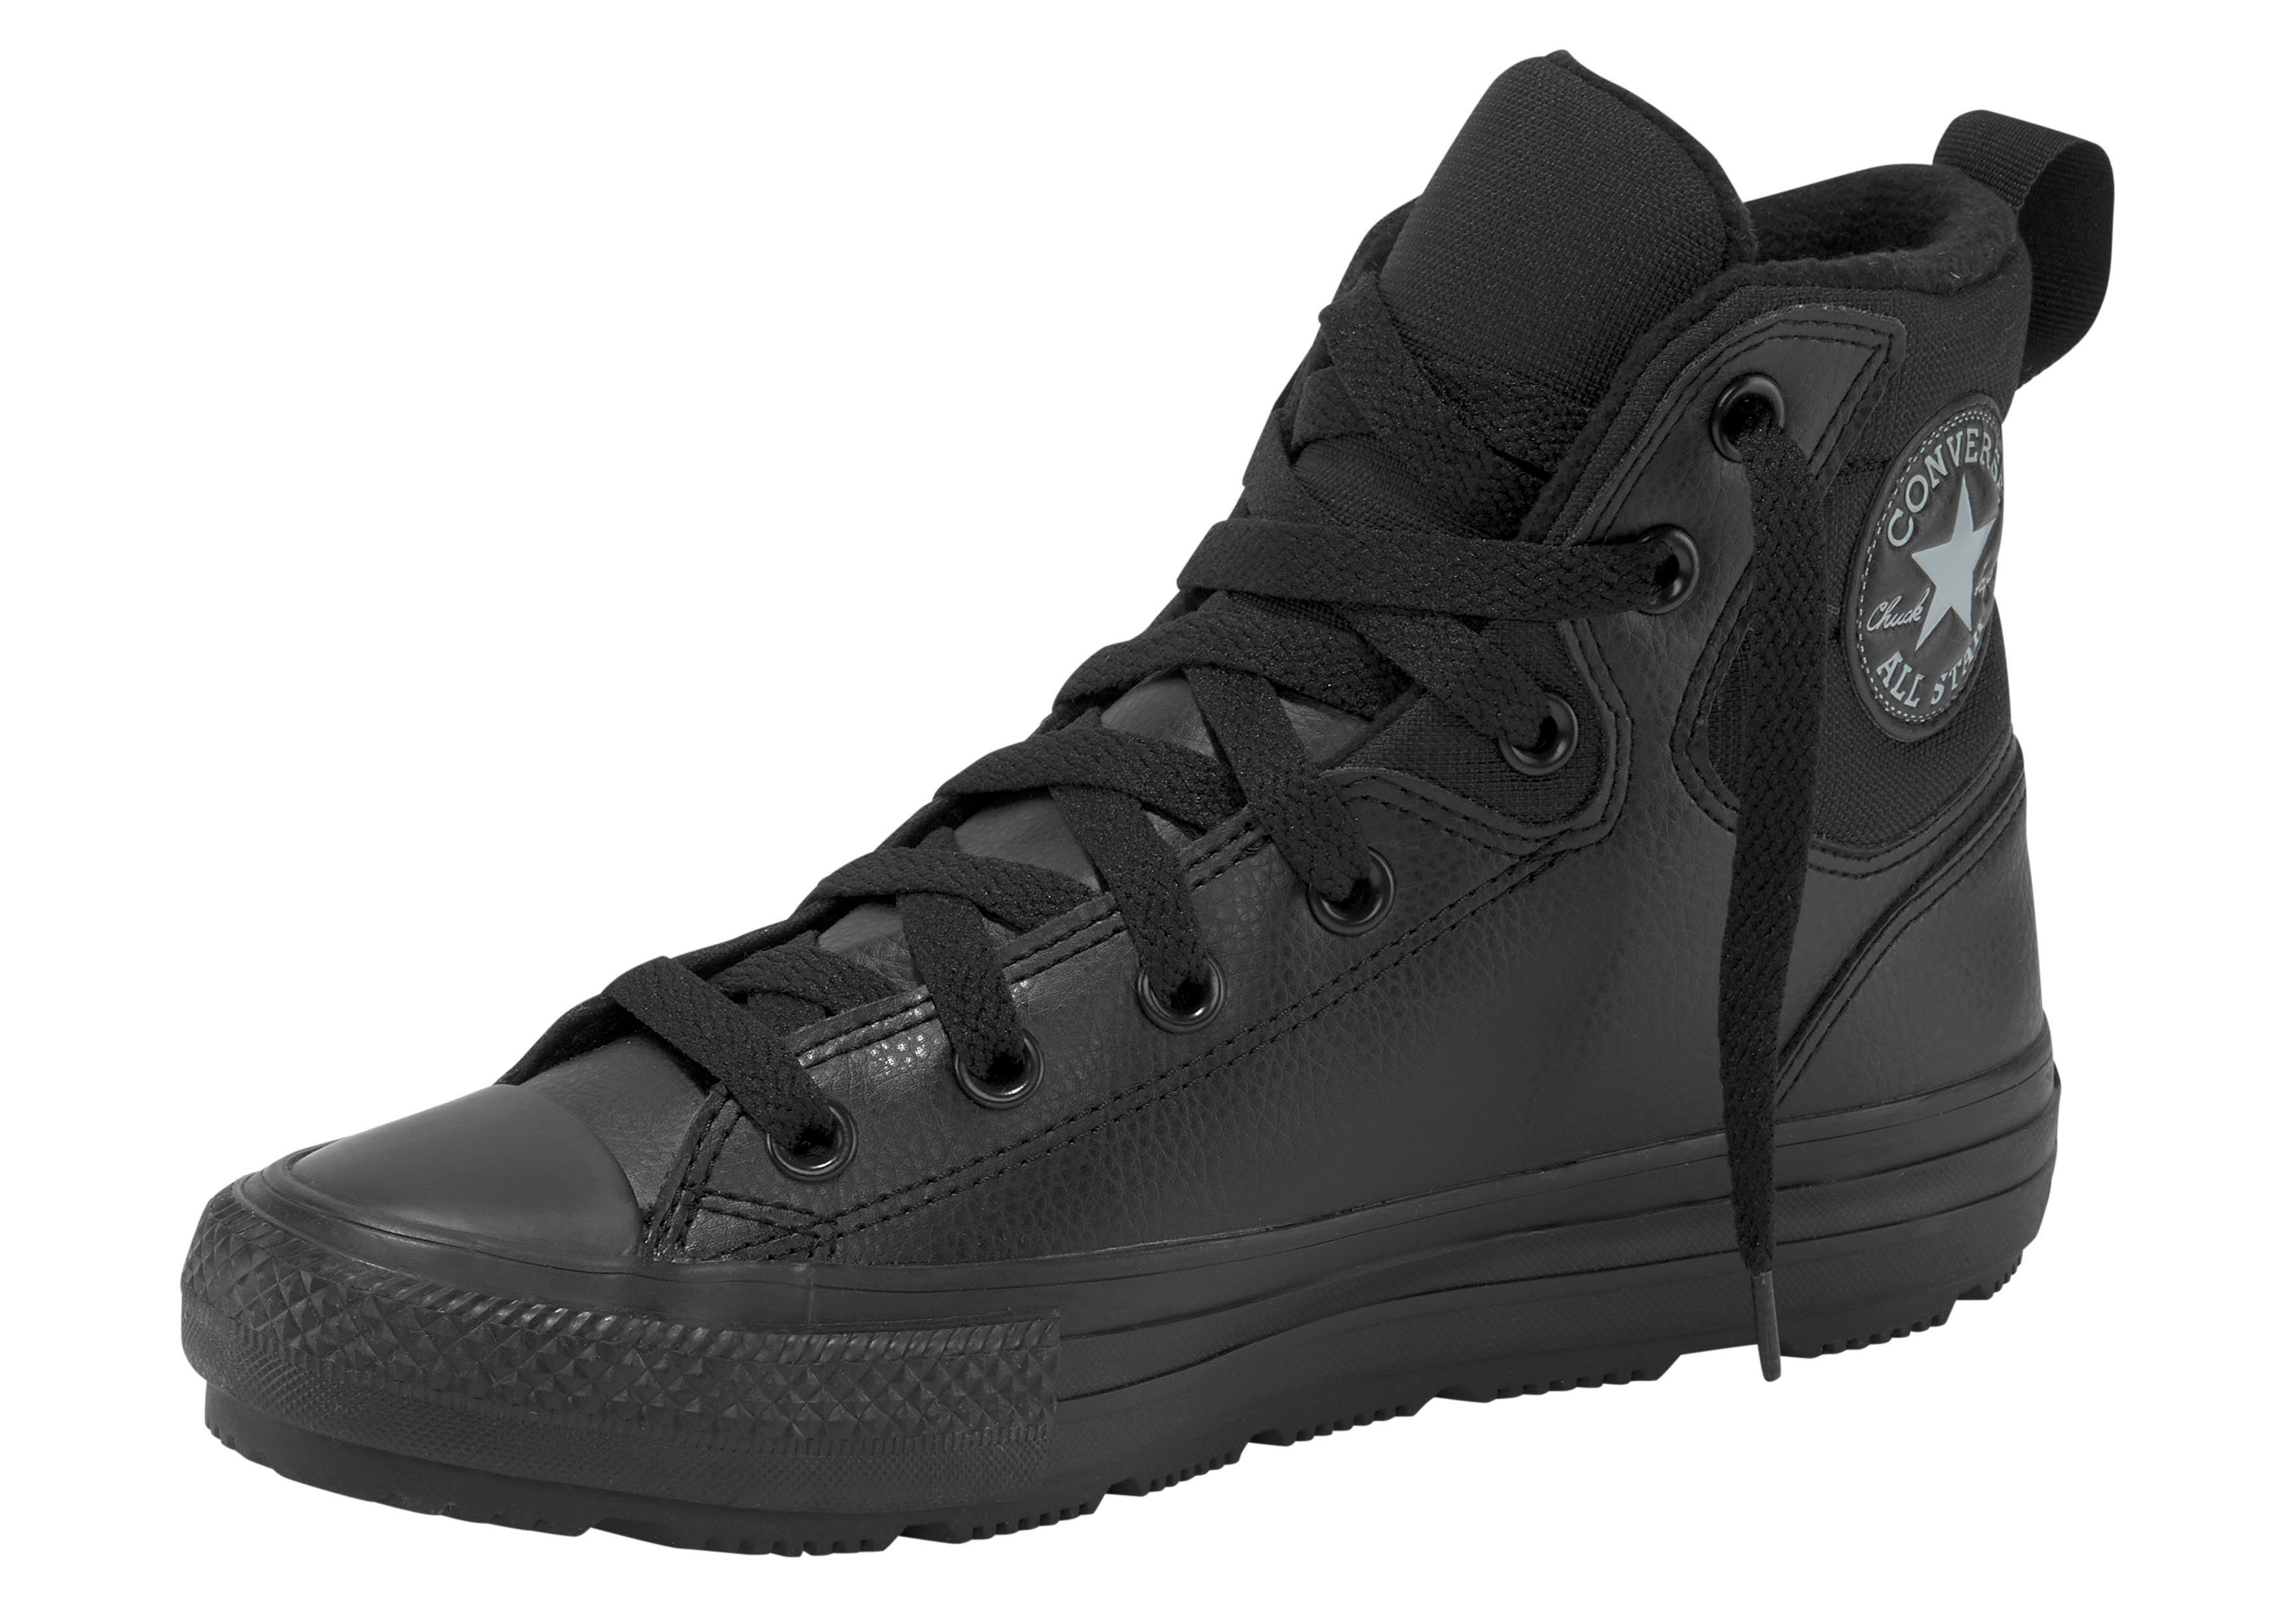 Chucks online kaufen » Converse Schuhe | OTTO